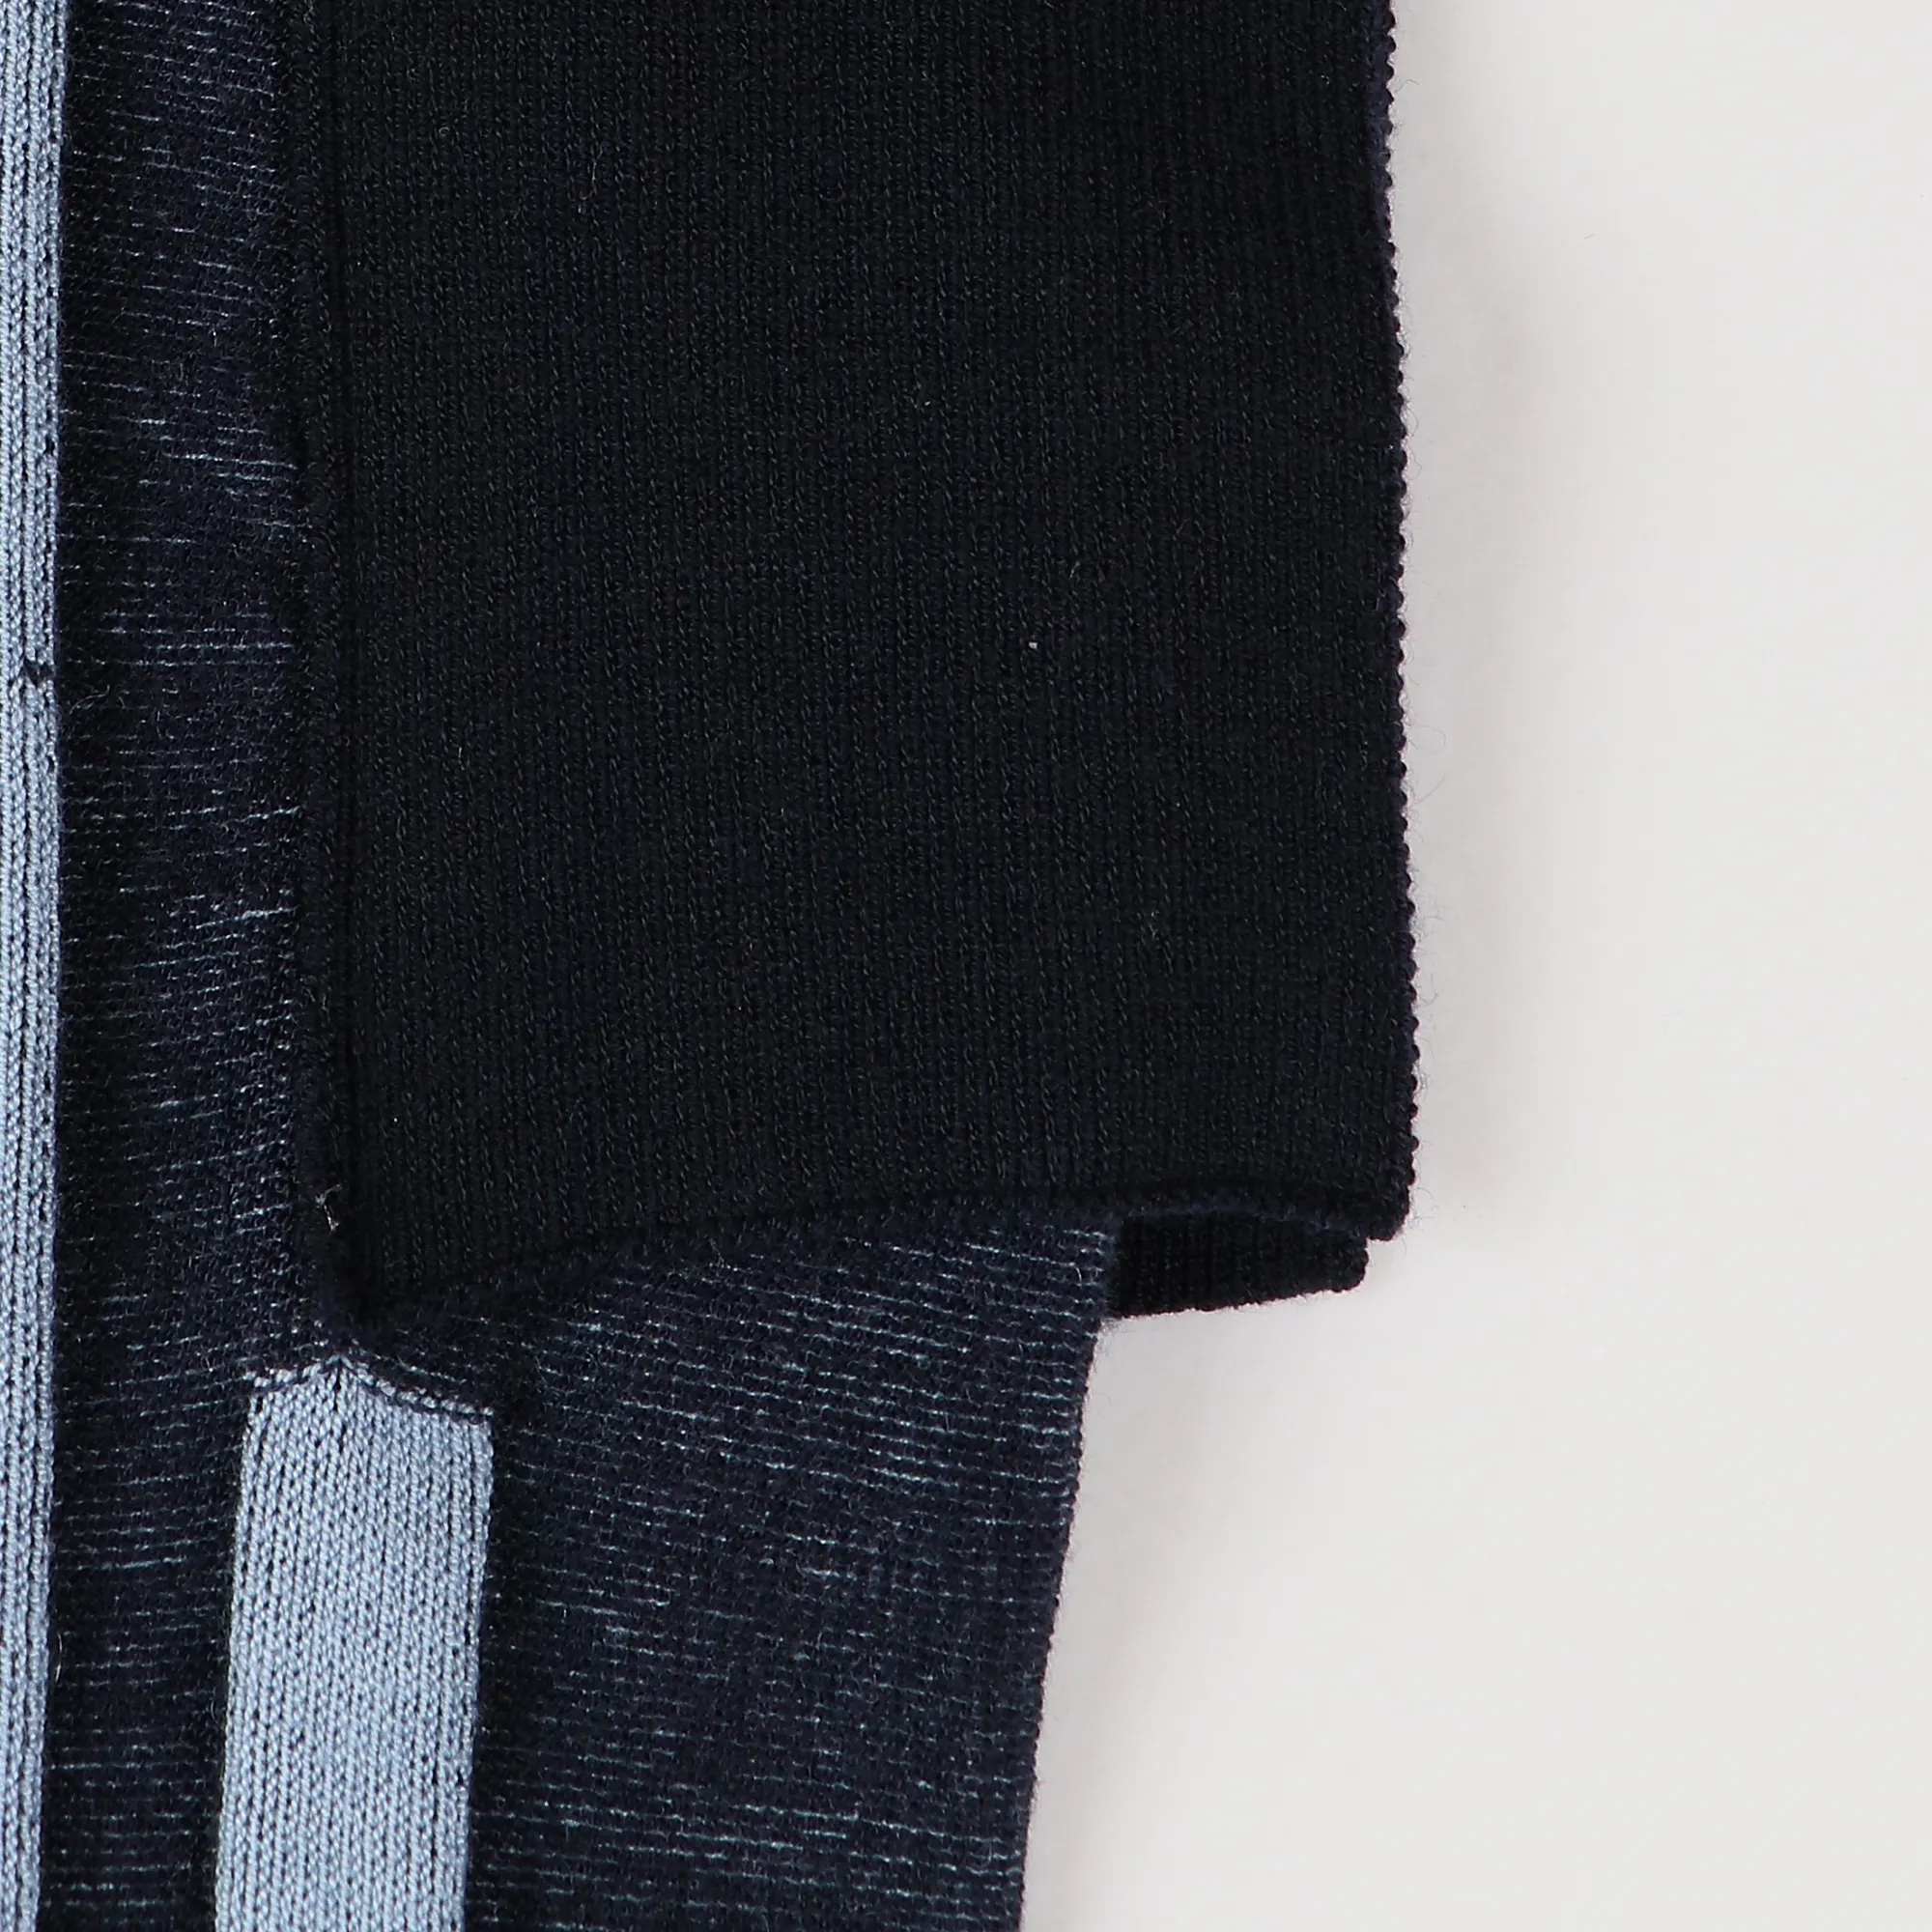 Einzigartiges Design Streifen Rundhals ausschnitt Short Flare Sleeve Strick pullover für Frauen